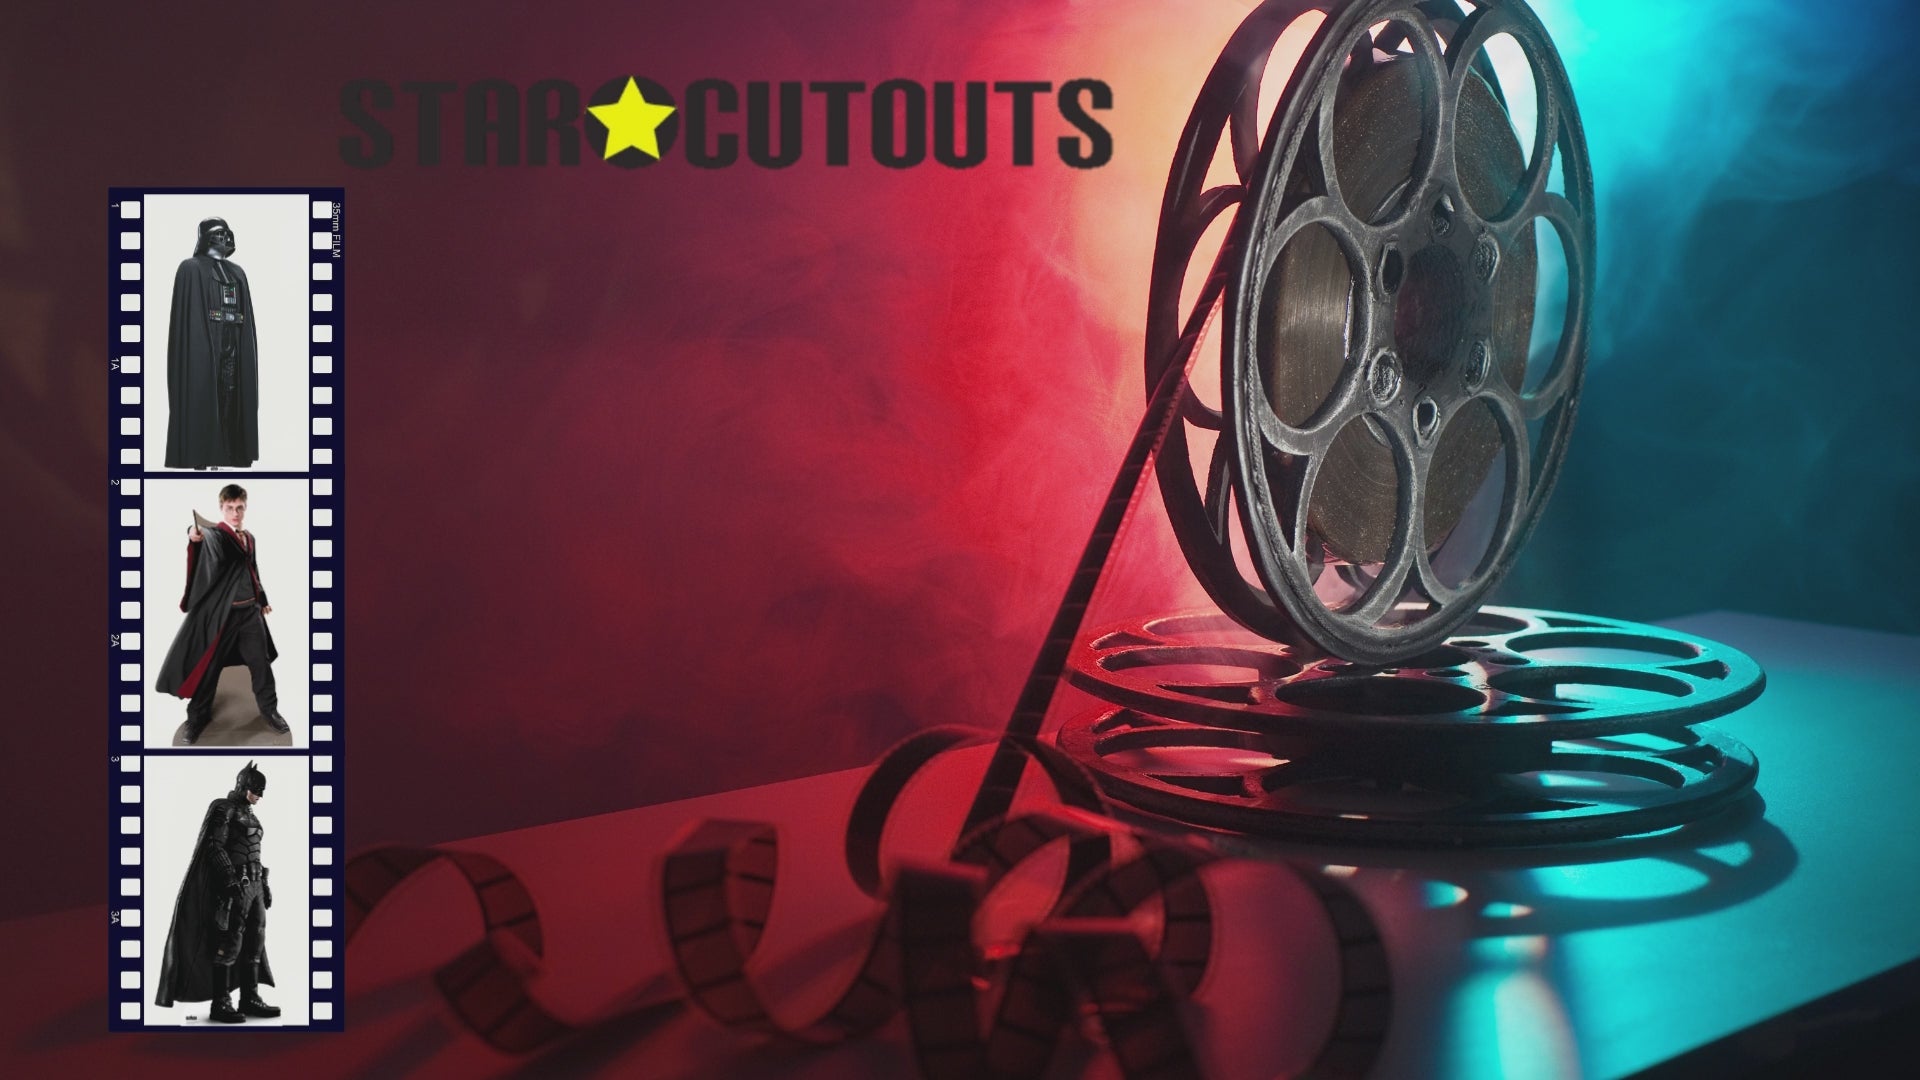 Movies – Star Cutouts